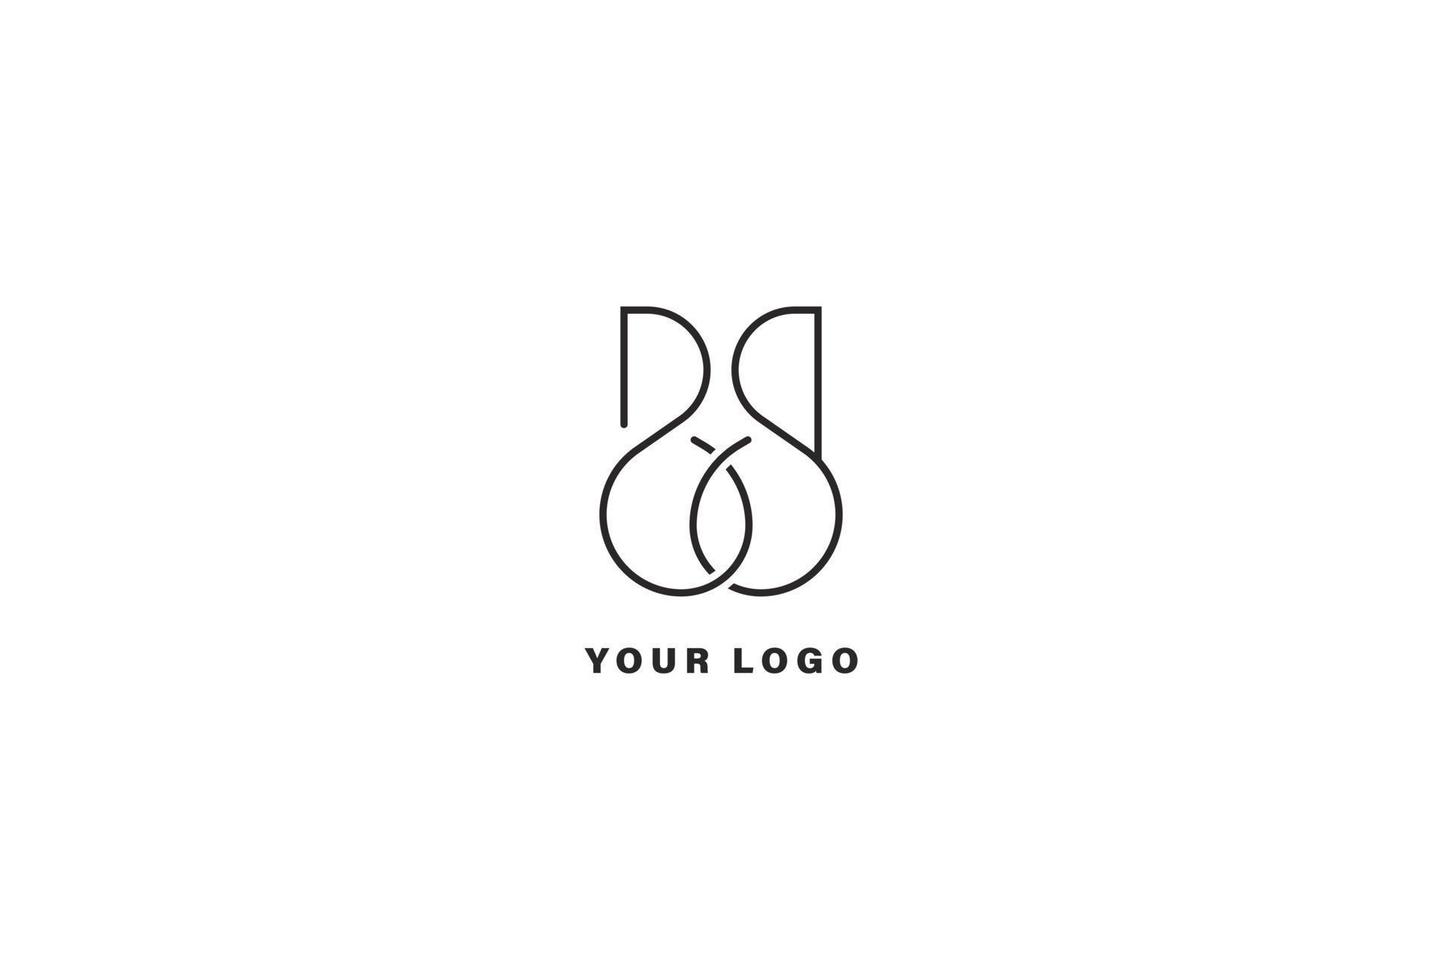 BB letter logo design template vector